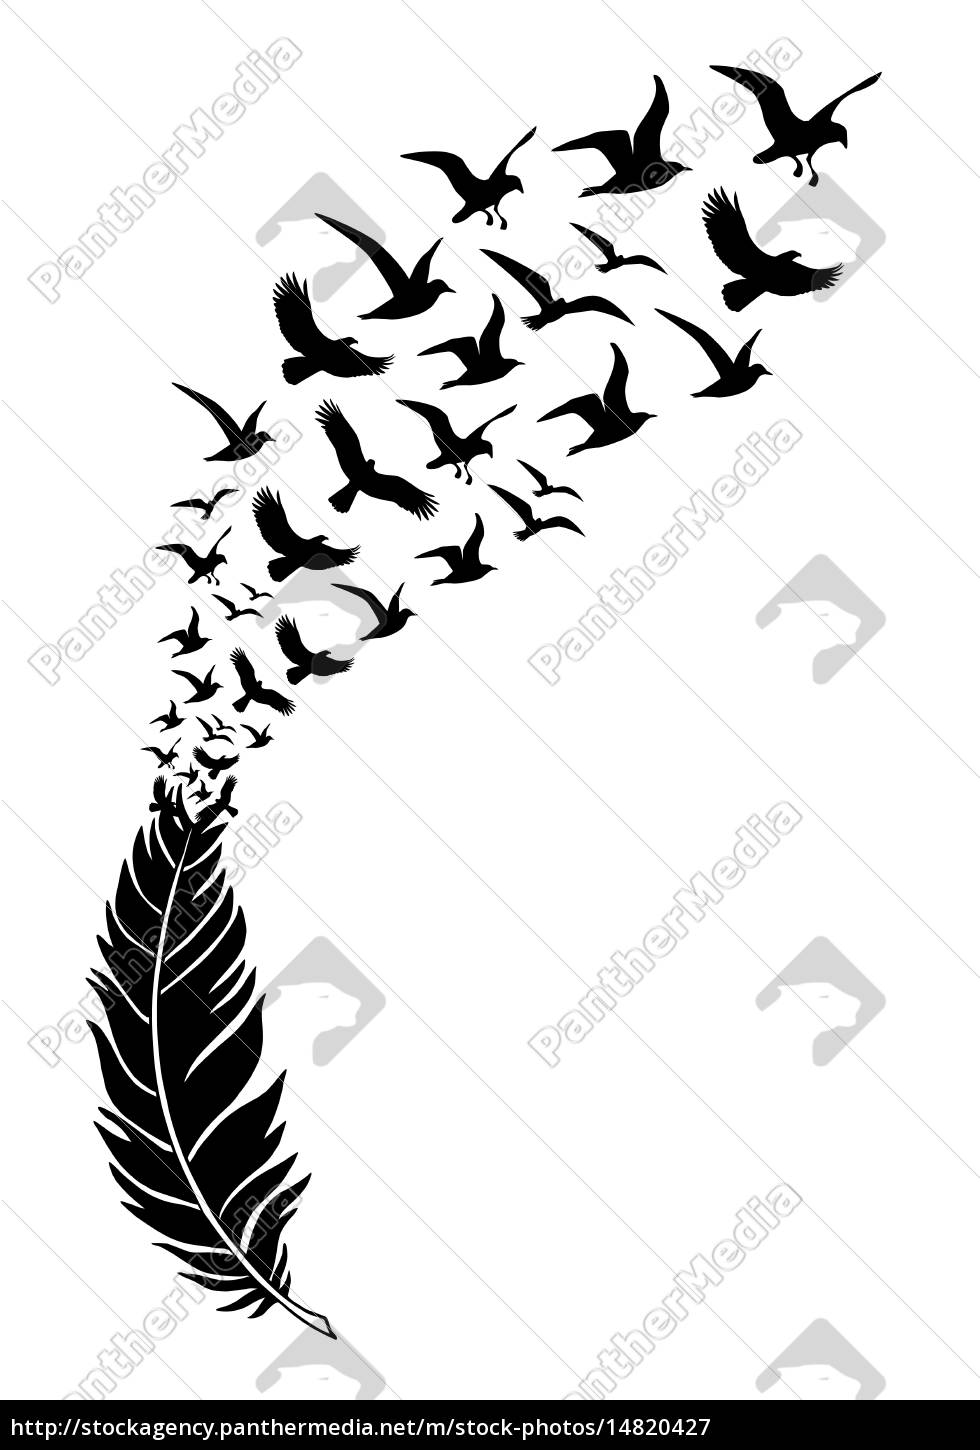 Plumas negras realistas. Pluma de aves,: ilustración de stock 2139683131